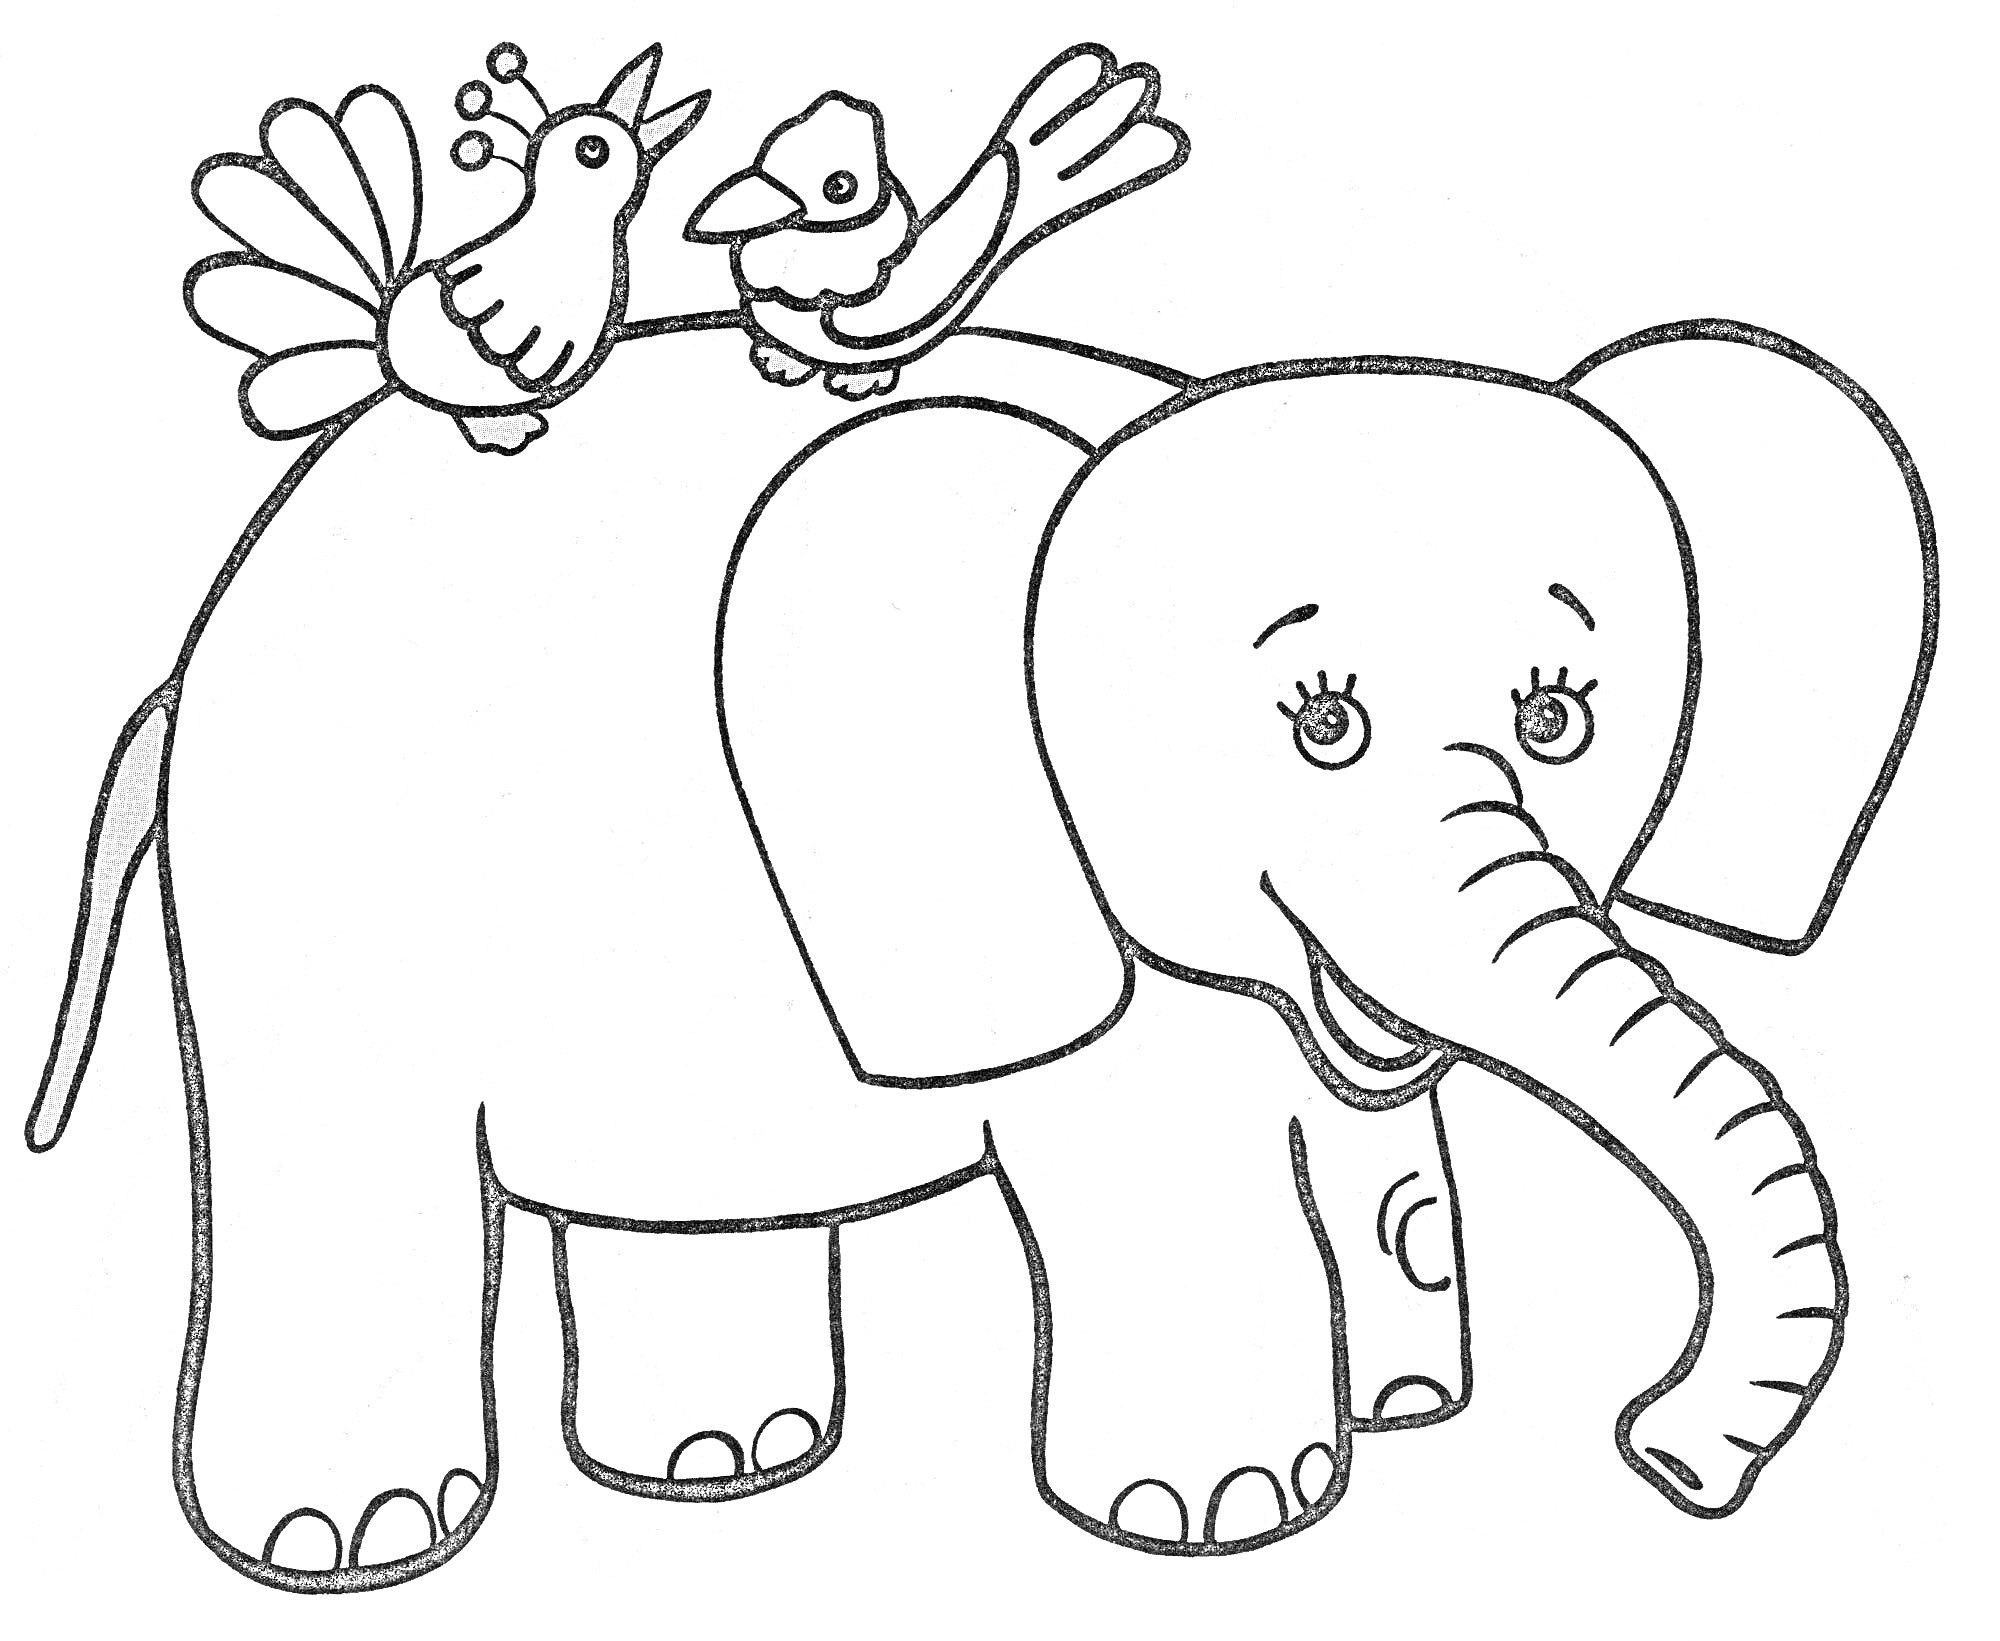 Раскраска Слон с двумя птицами на спине